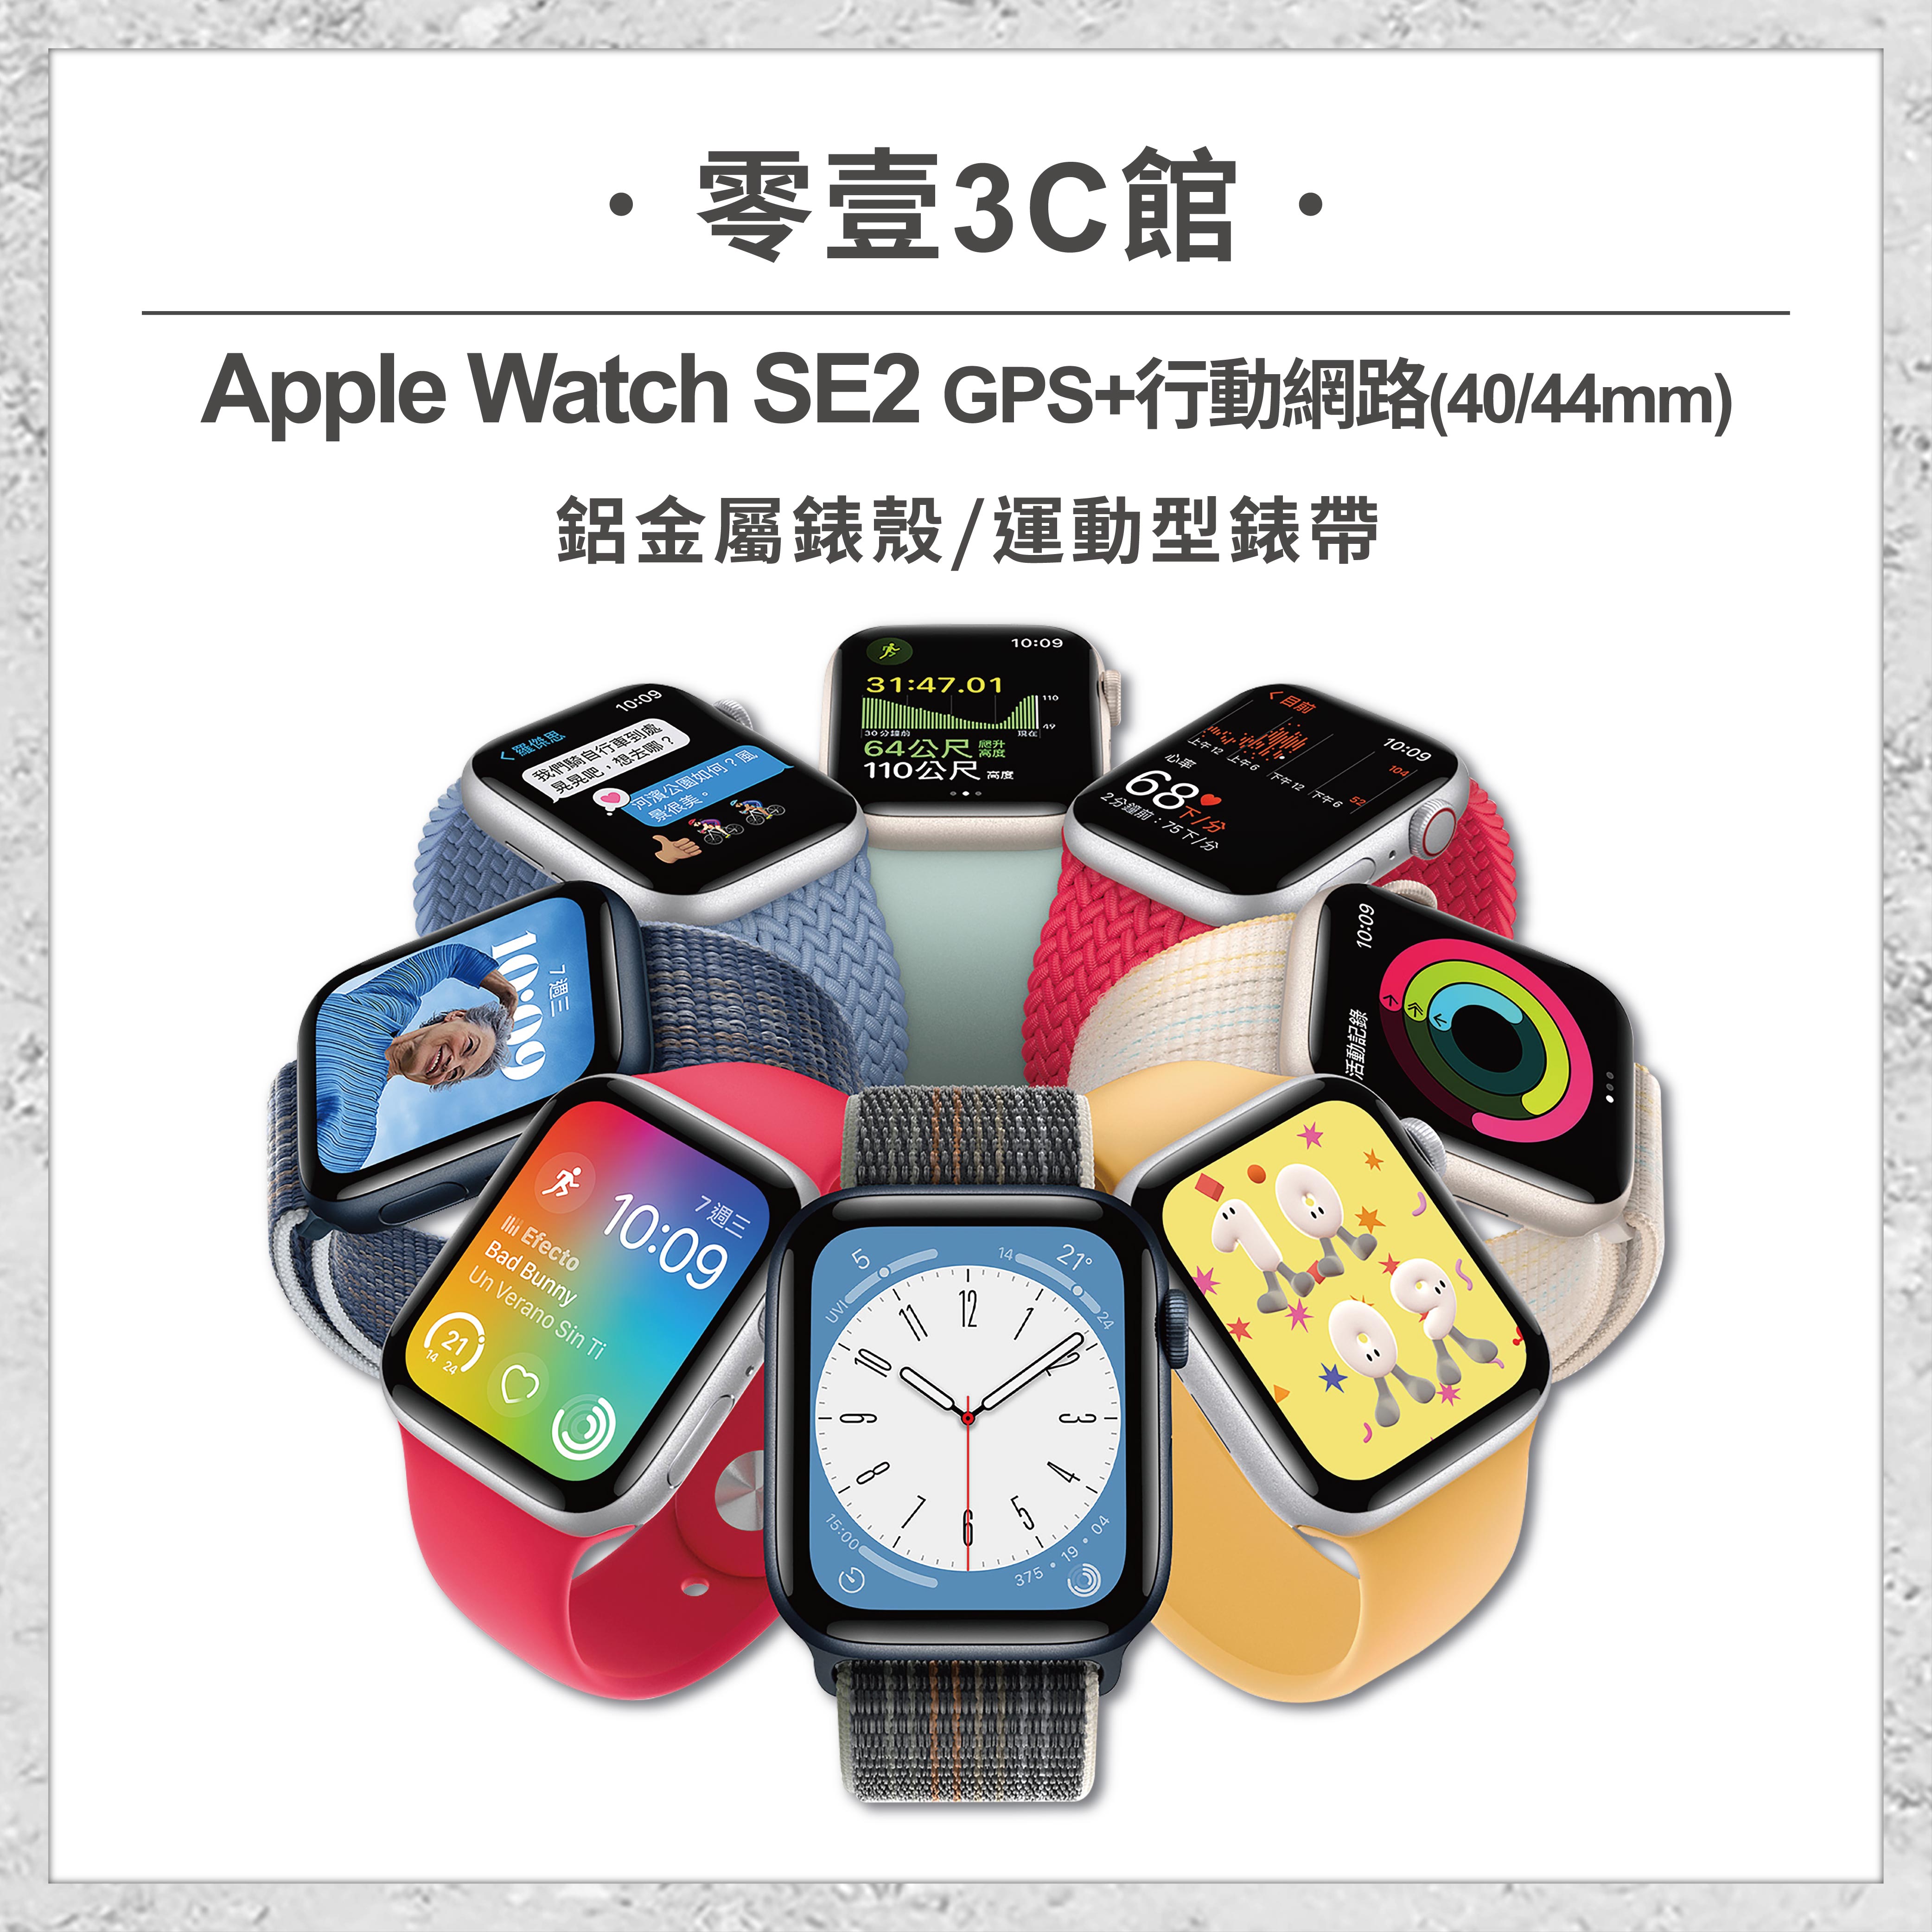 apple watch 40mm gps - FindPrice 價格網2023年8月精選購物推薦